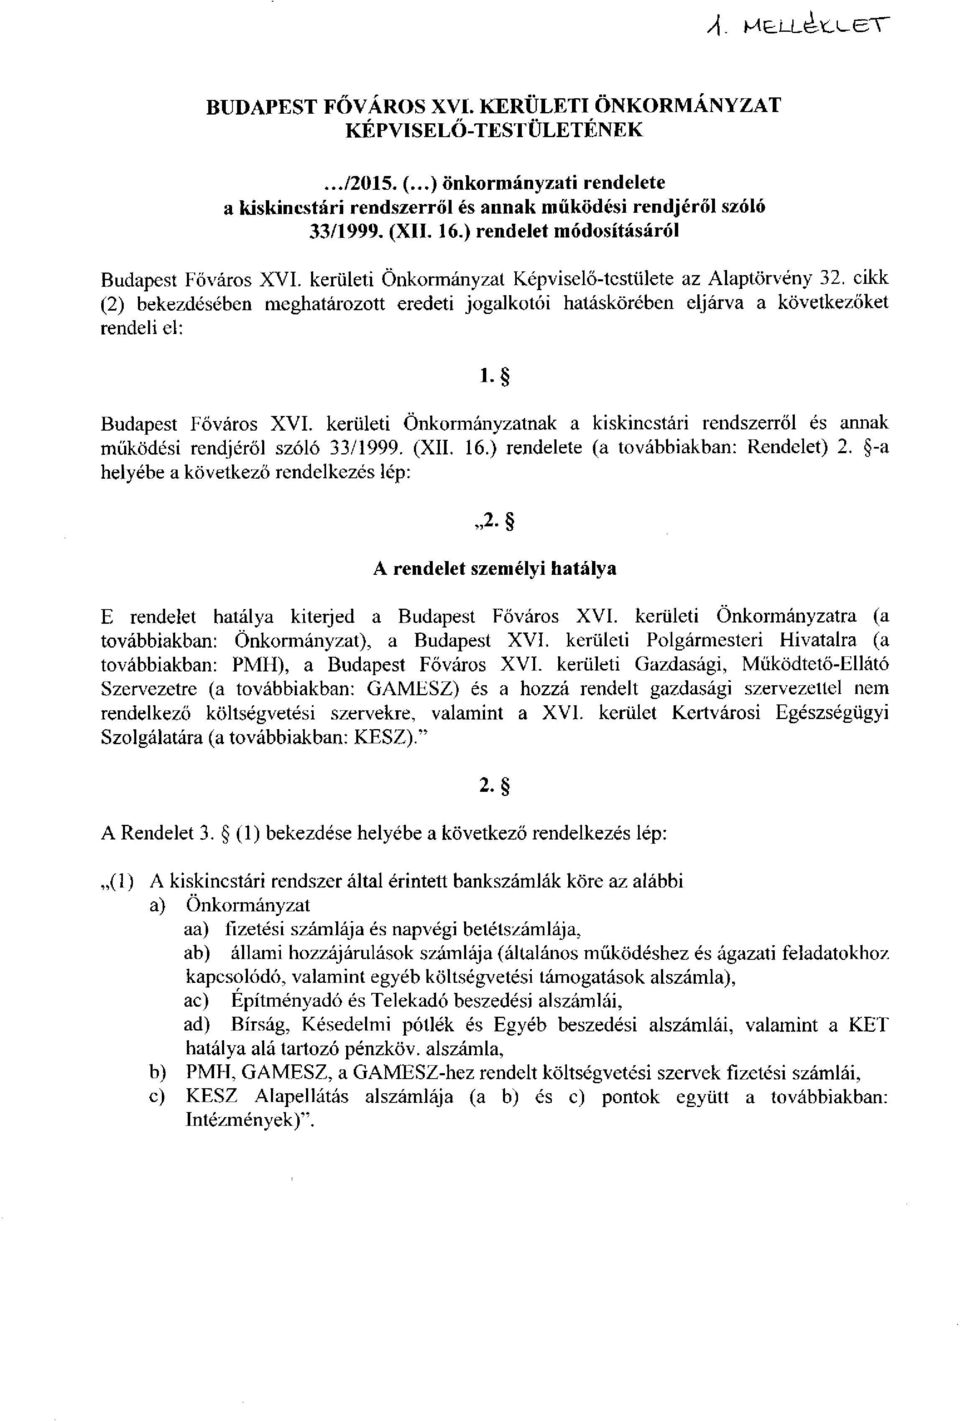 cikk (2) bekezdésében meghatározott eredeti jogalkotói hatáskörében eljárva a következőket rendeli el: l- Budapest Főváros XVI.